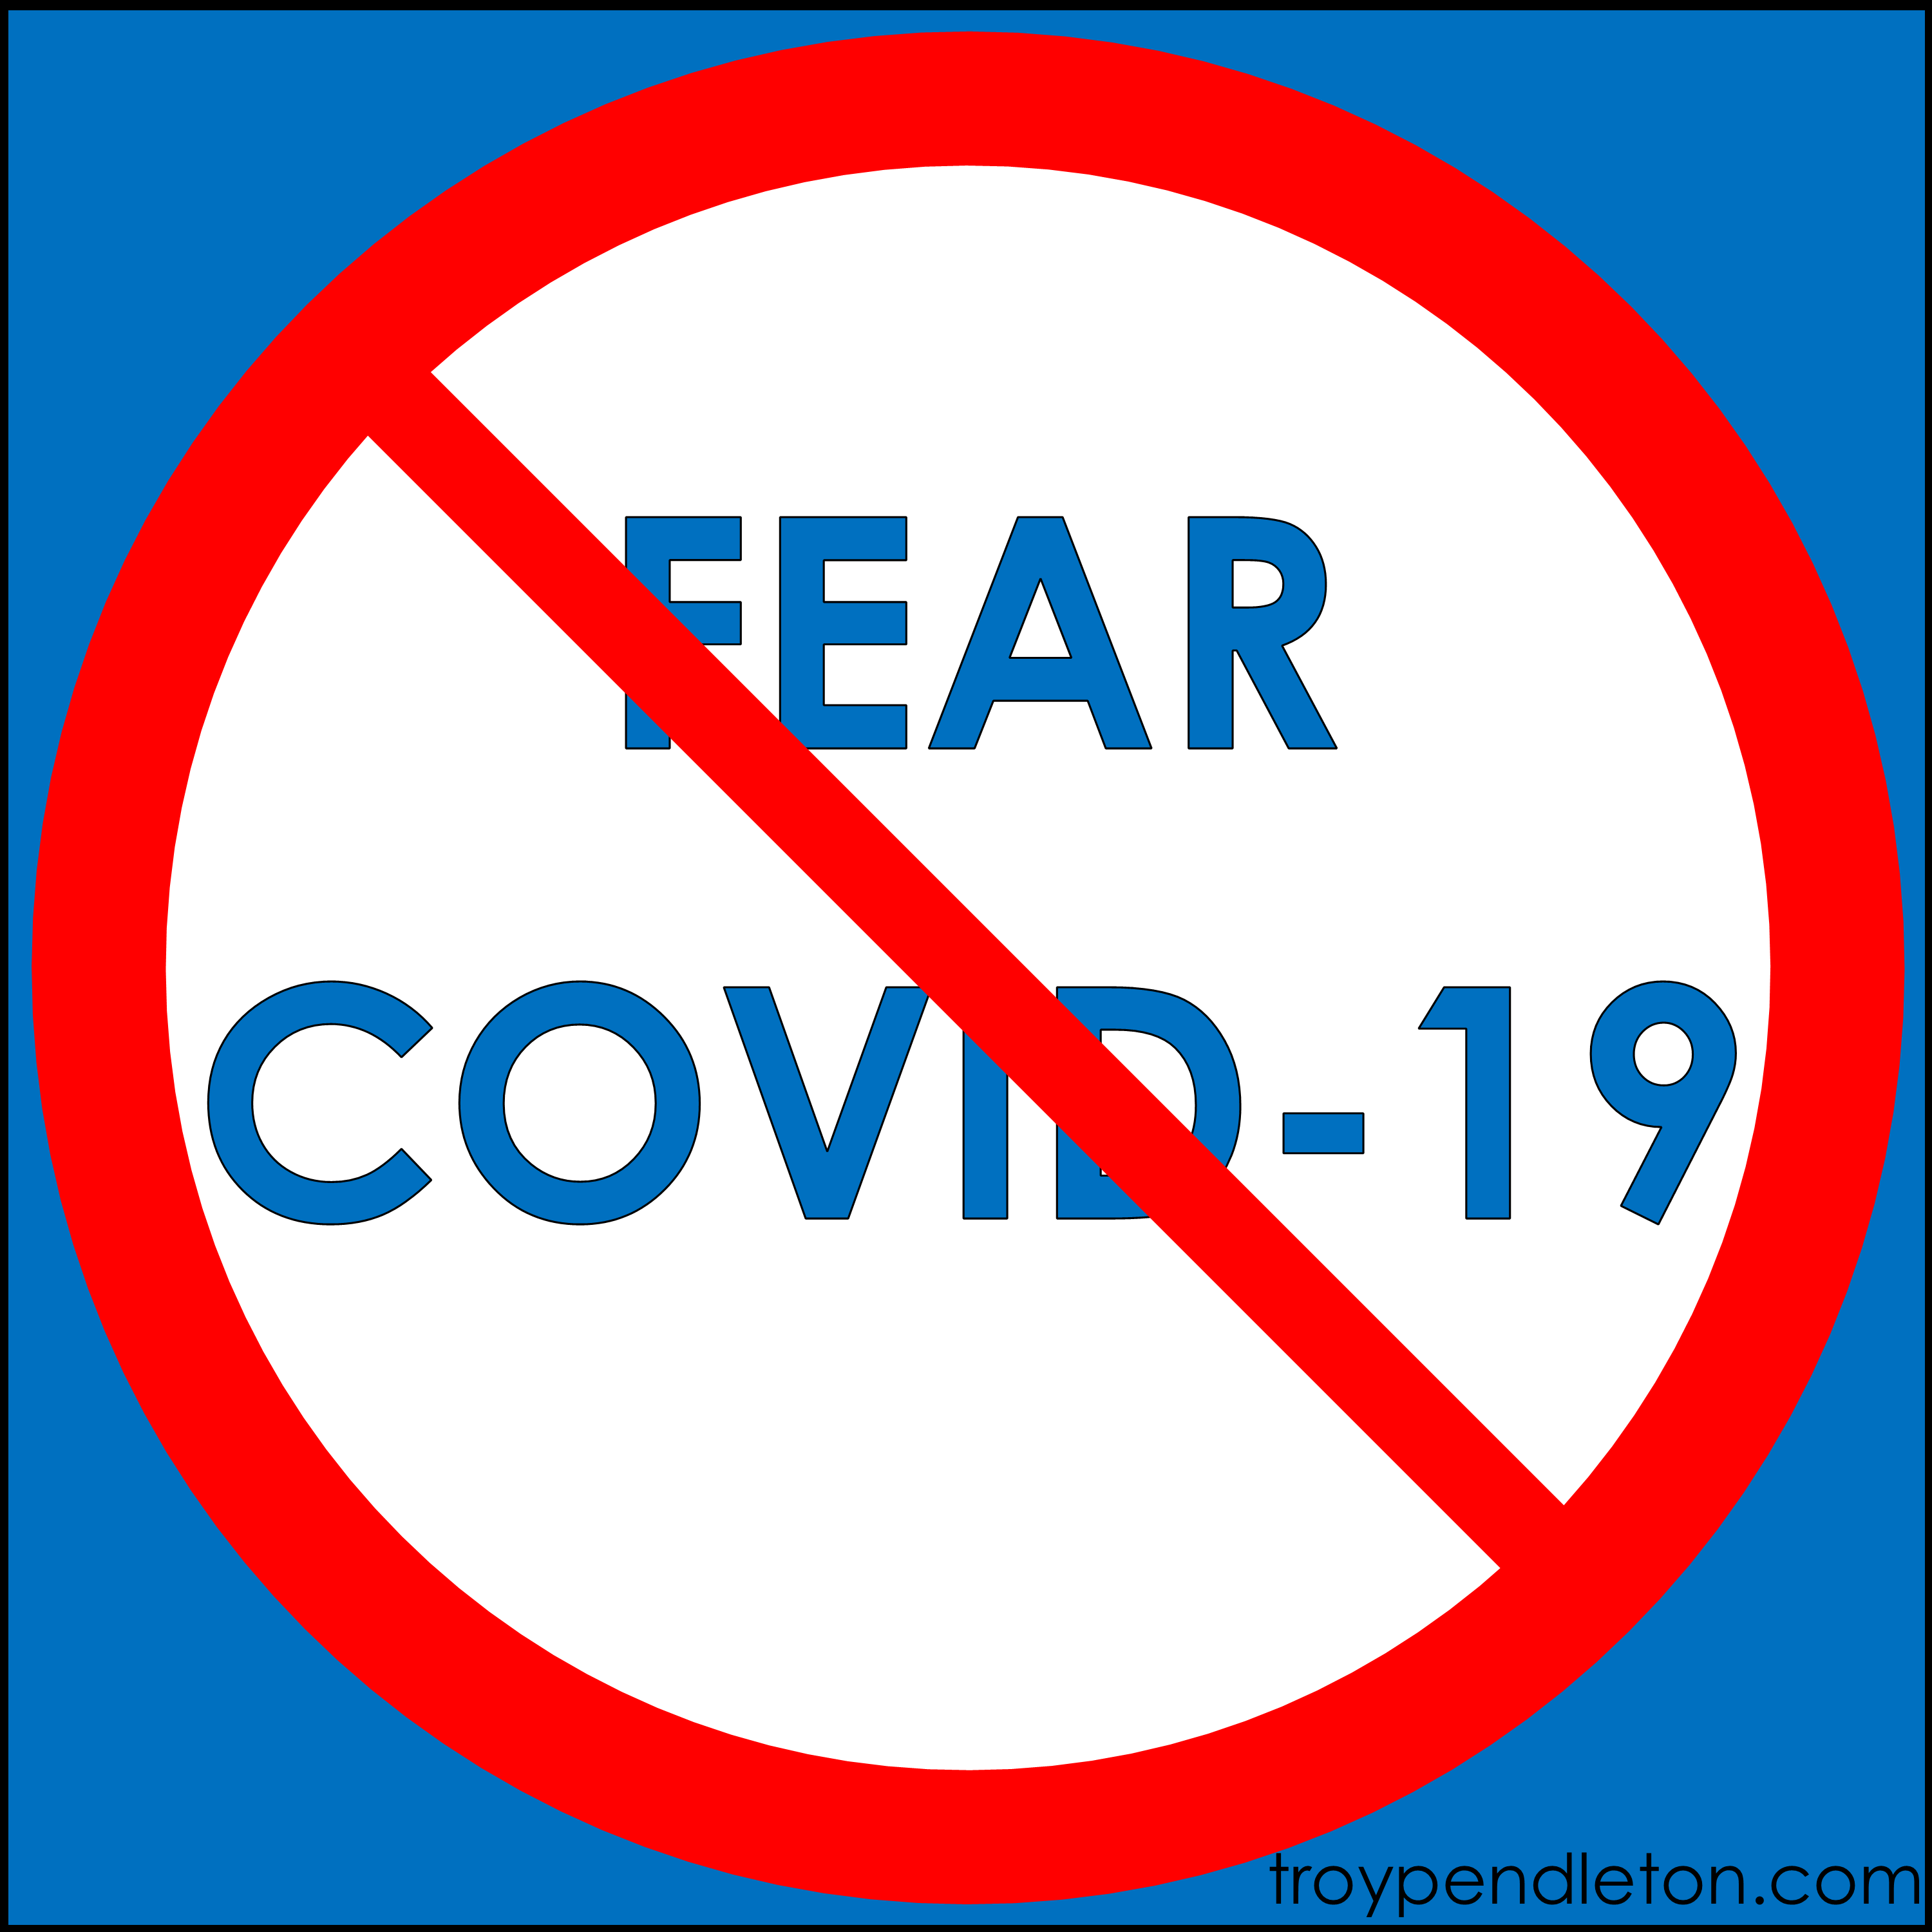 Covid19 (No Fear)